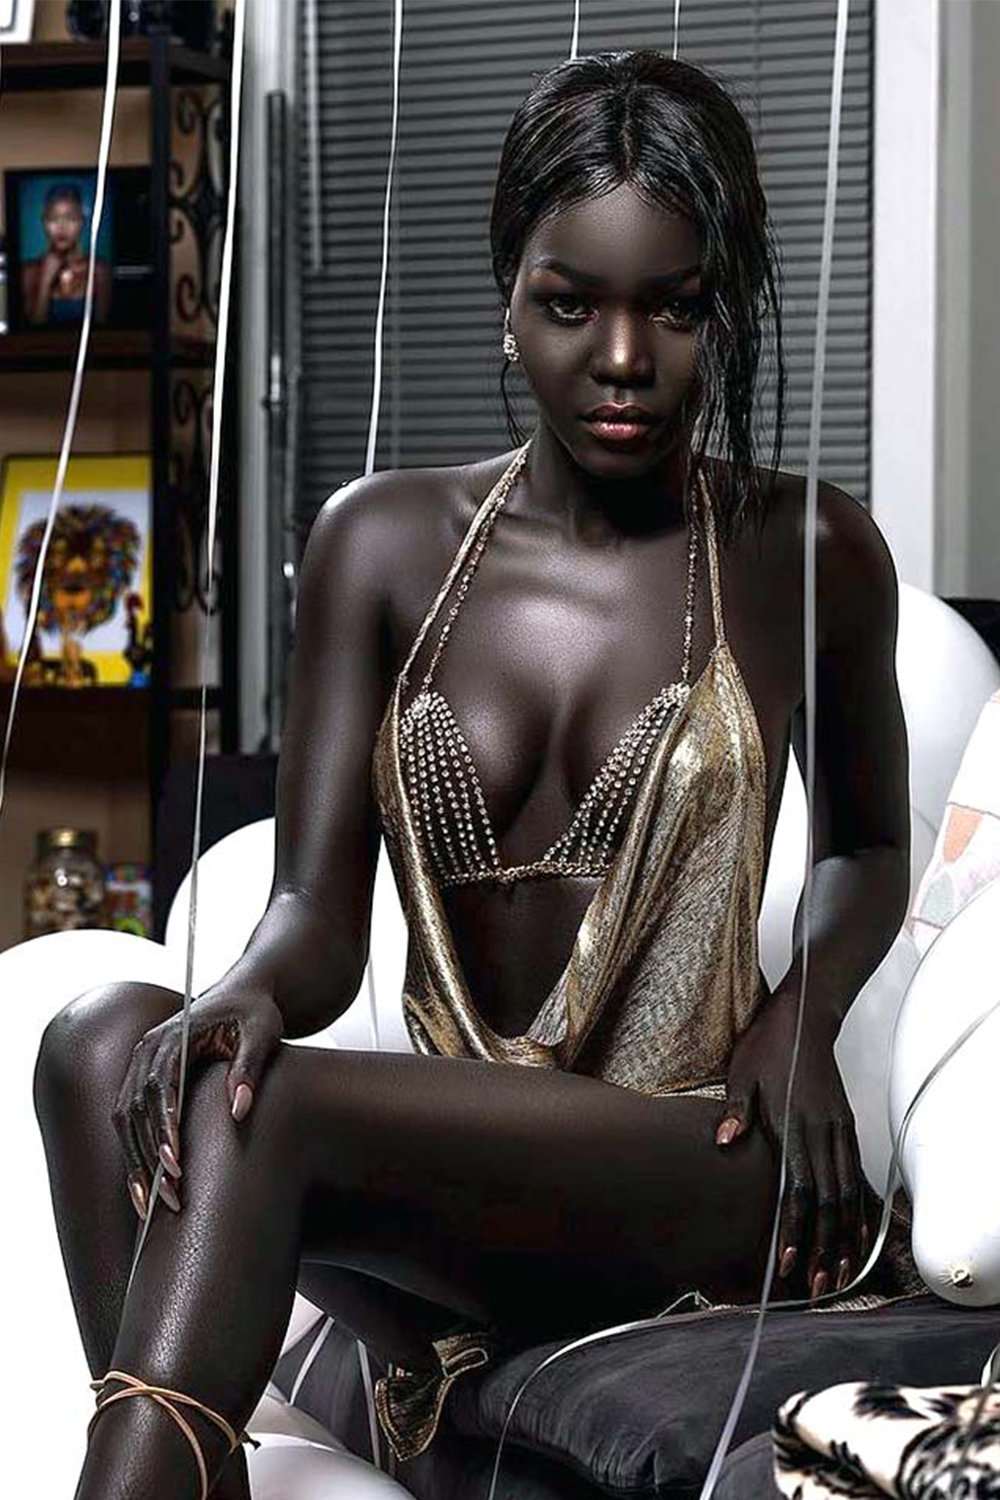 Худые негритянки видео. Няким Гатвеч. Нуаким Гатвеч модель из Южного Судана. Королева тьмы модель из Южного Судана Ньяким. Nyakim Gatwech (Ньяким Гатвеч) - 24-летняя модель.